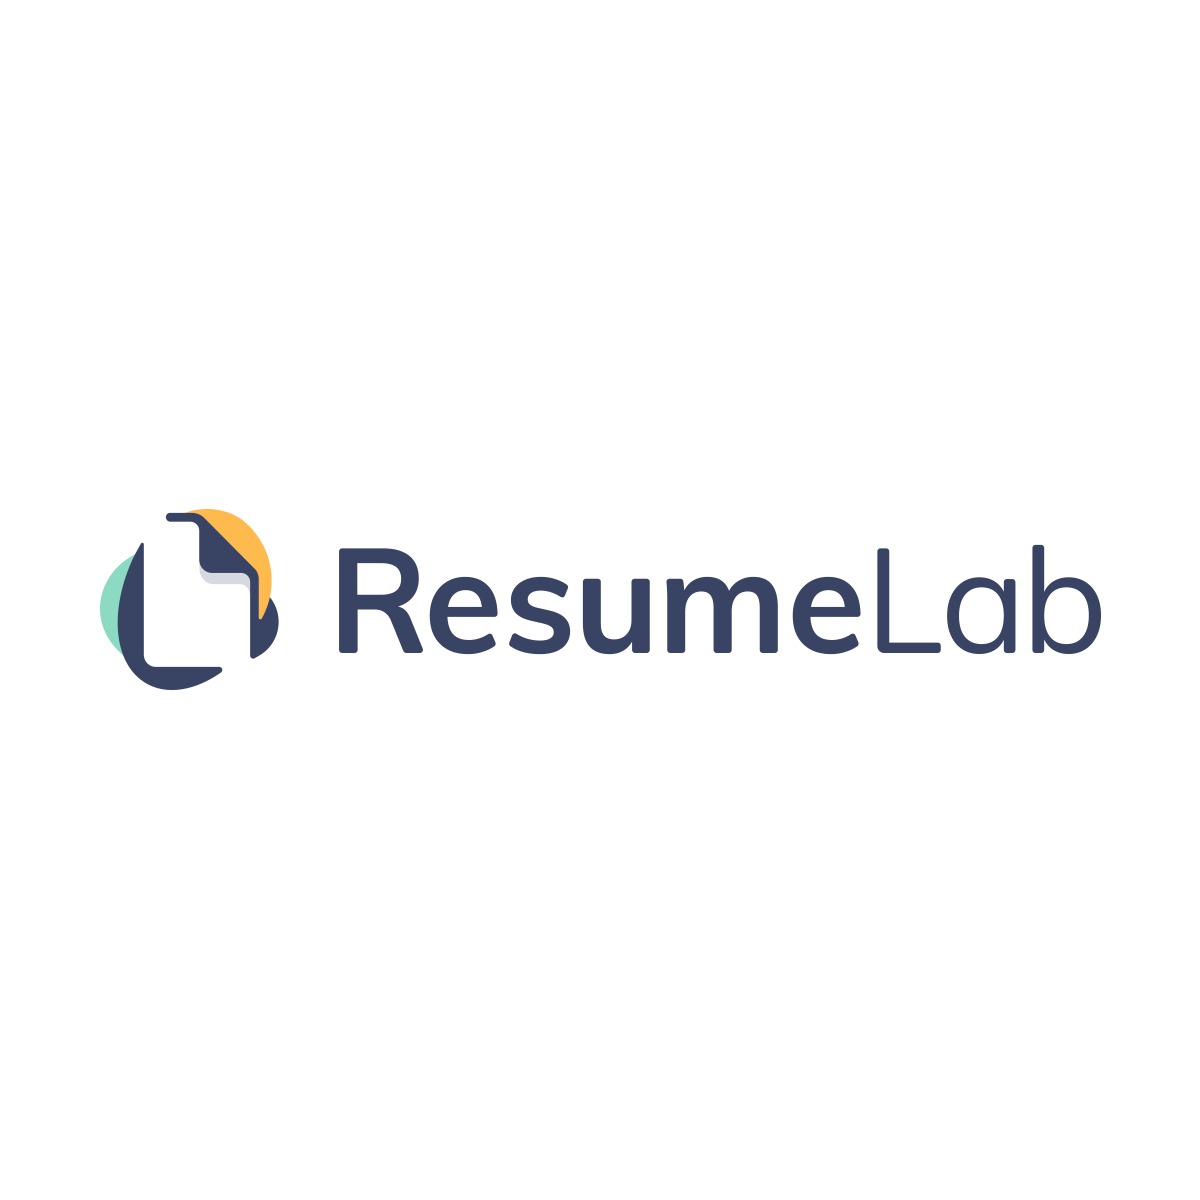 ResumeLab logo